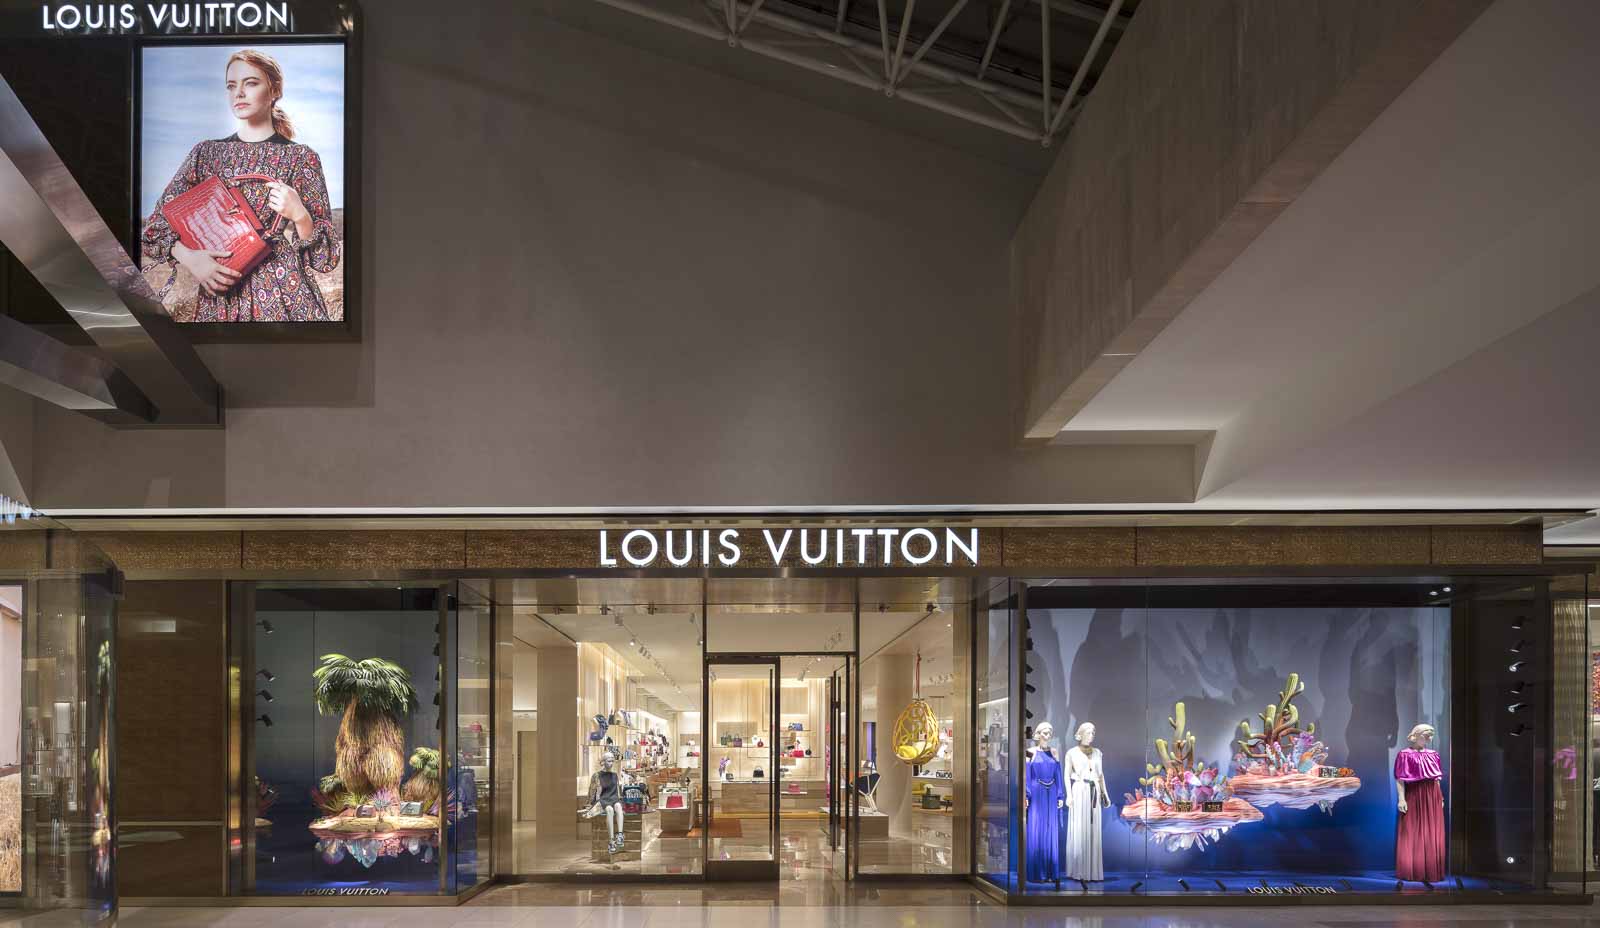 Louis Vuitton, South coast plaza, Costa Mesa, California